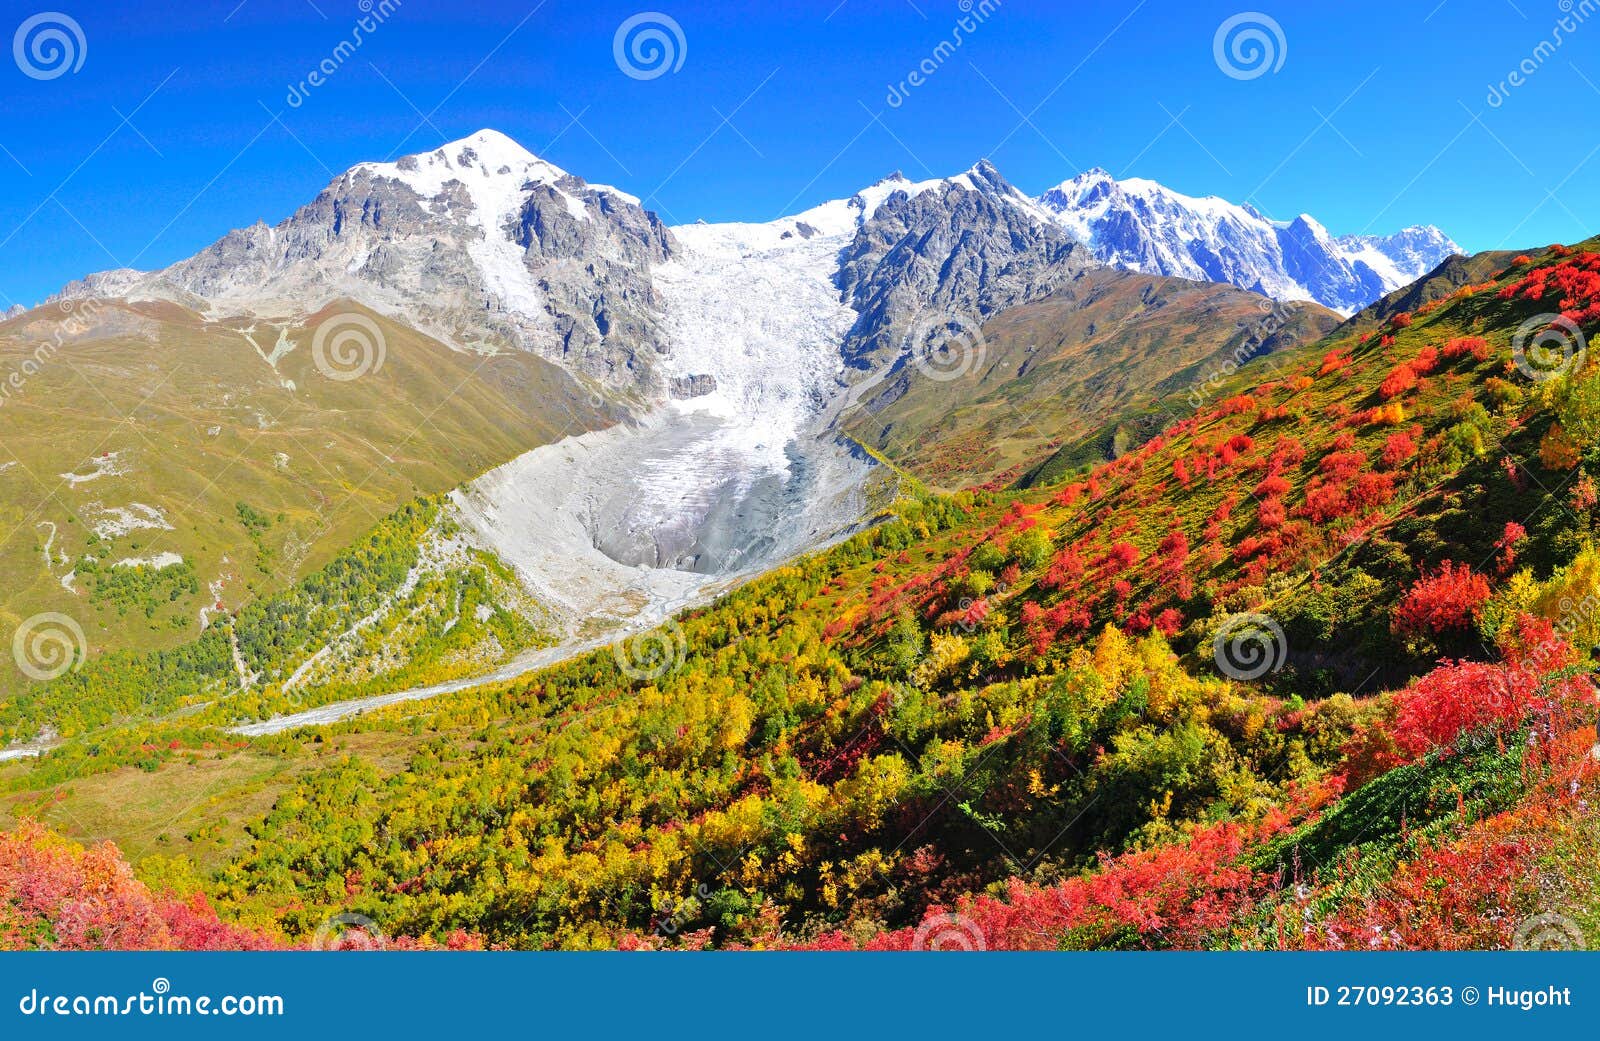 Mestia-Ushguli Trek, Svaneti Georgia Stock Photos - Image ...